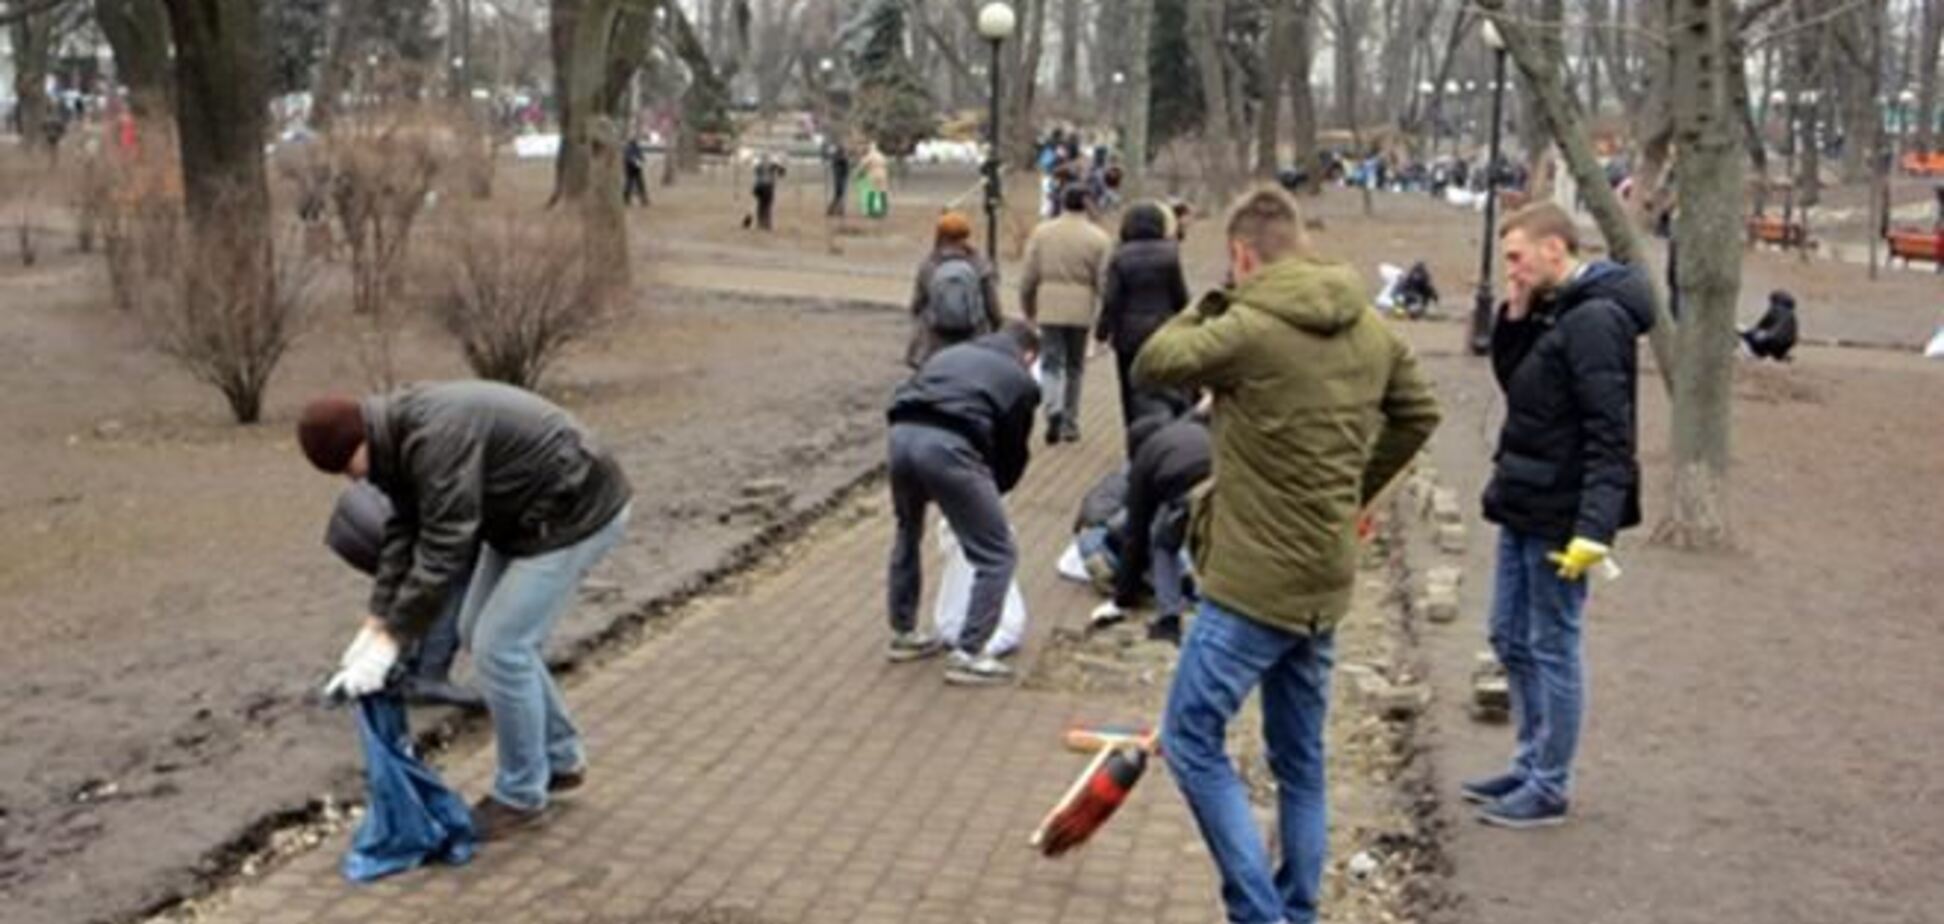 Киевляне через соцсети собираются на уборку мусора в центре столицы 1 марта